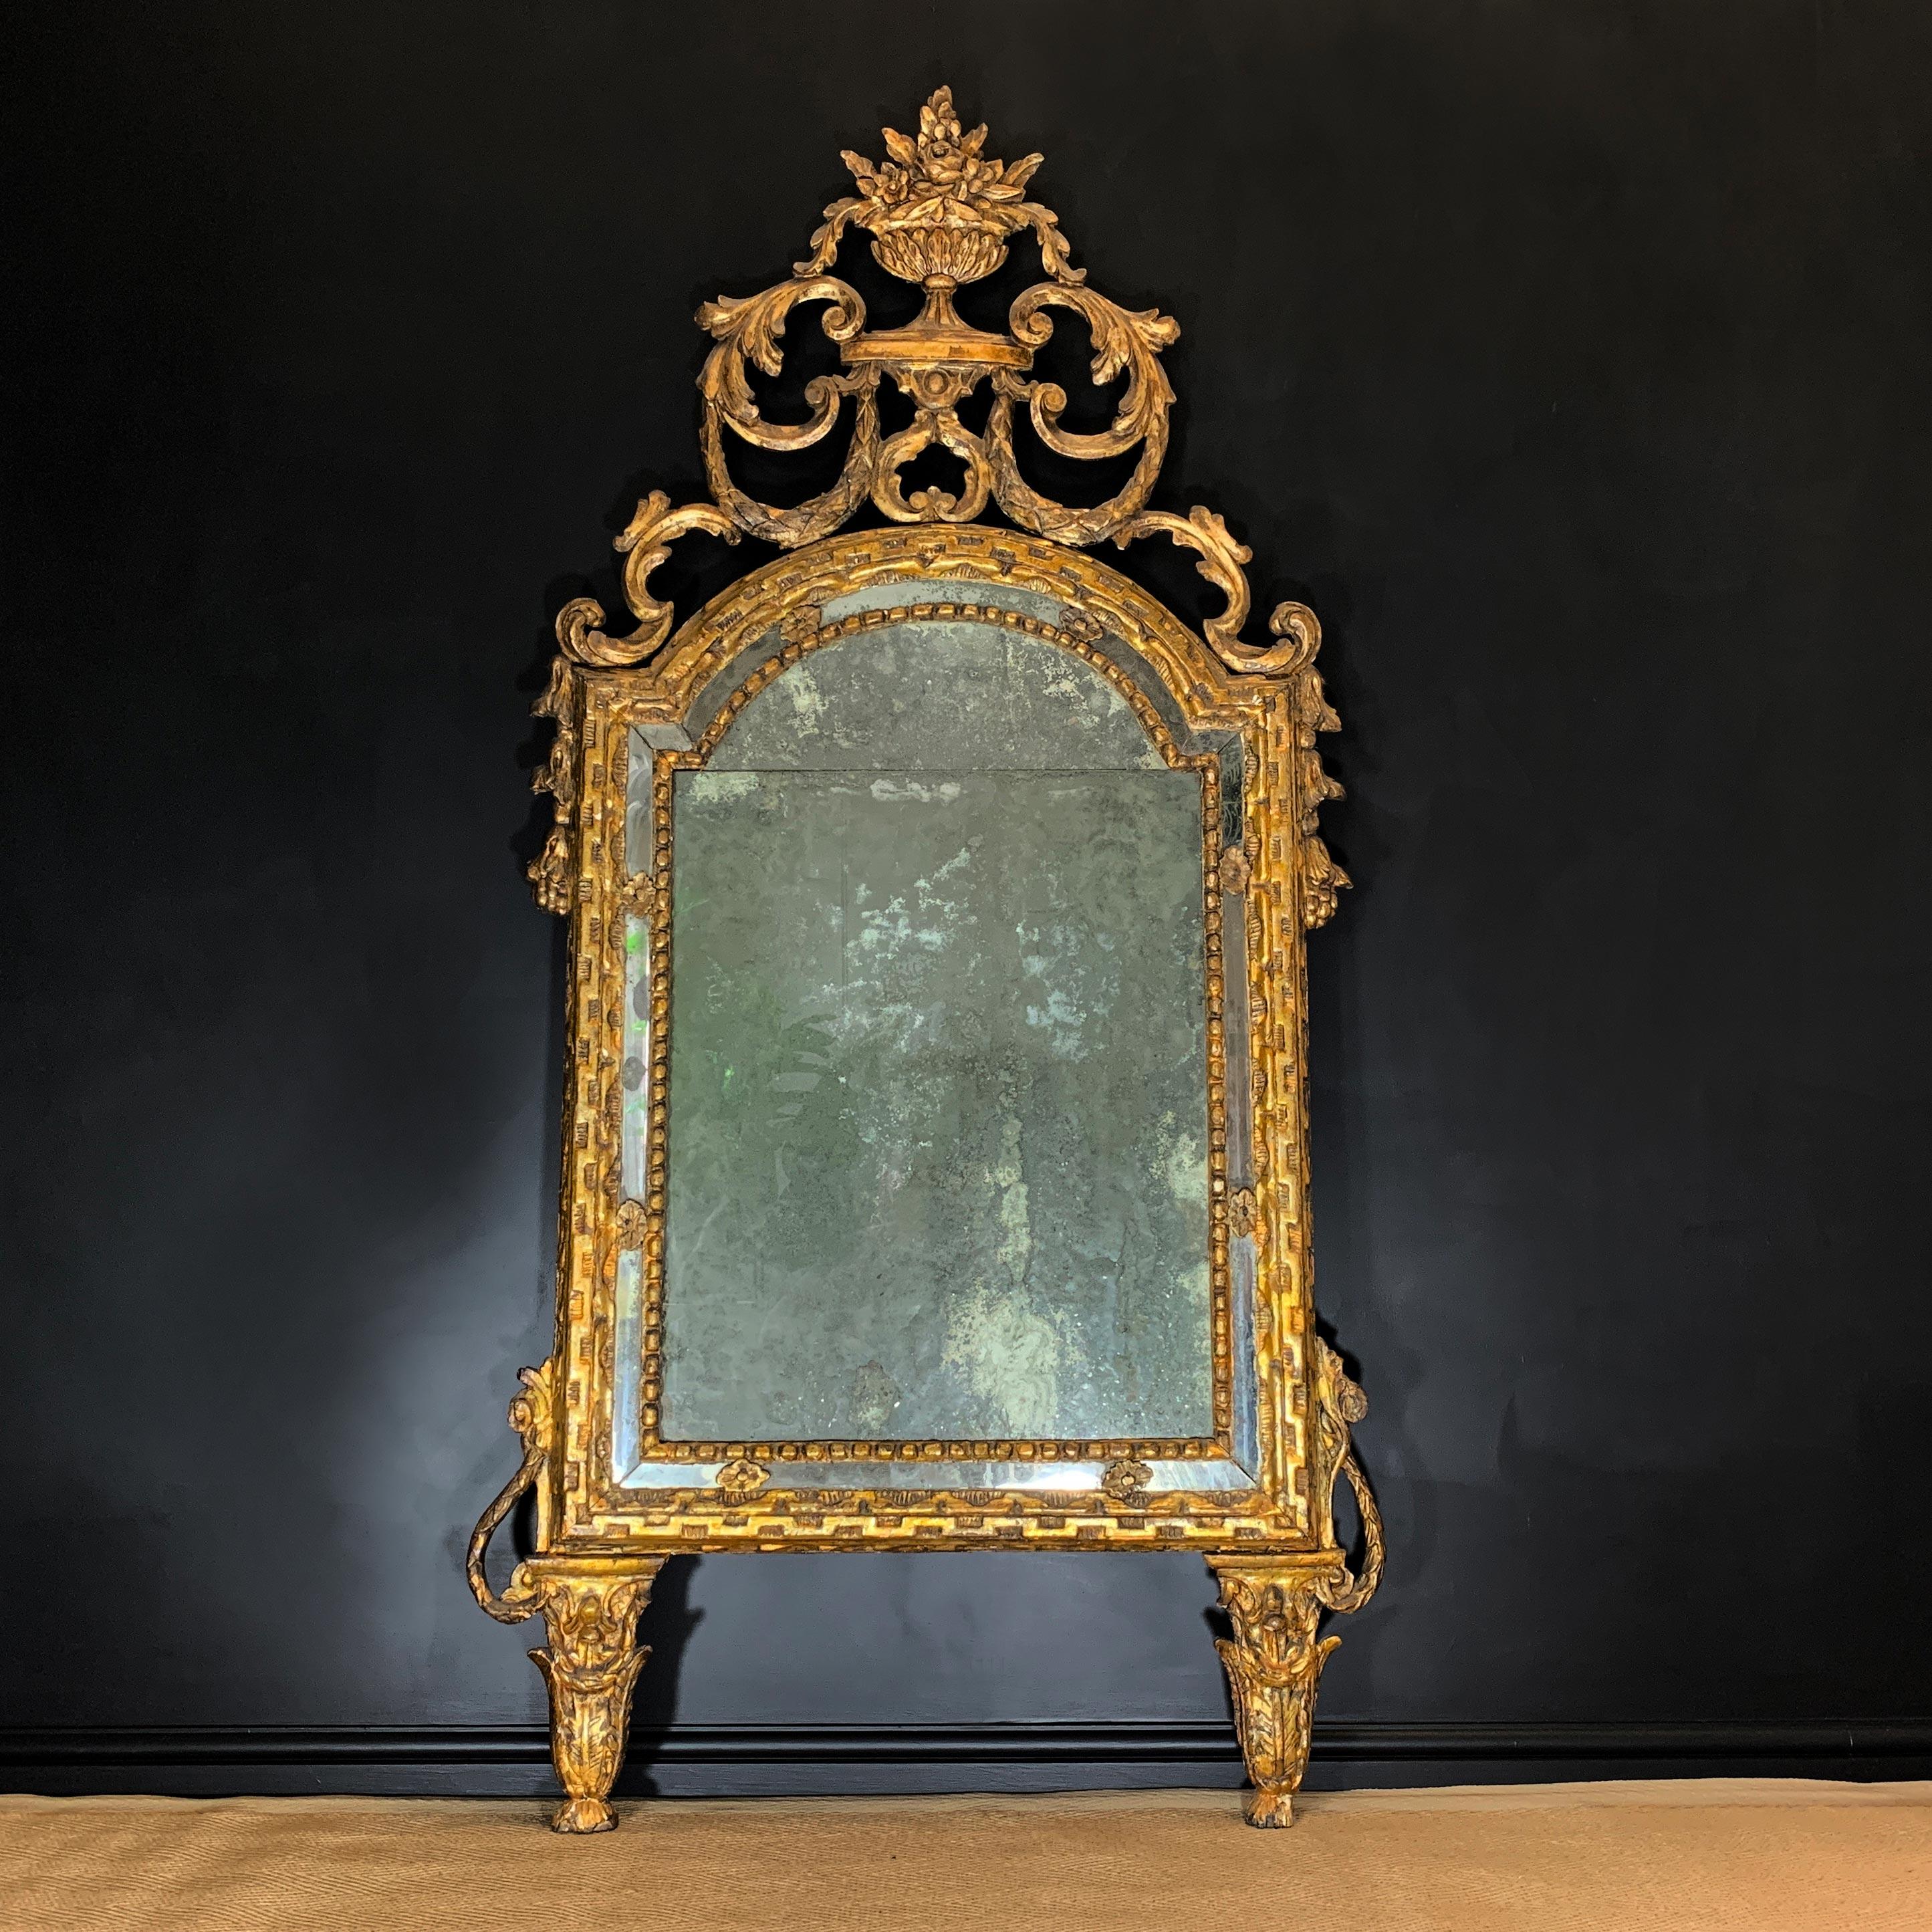 Ein außergewöhnlicher italienischer Spiegel mit geteilter Platte

Datiert auf ca. 1730, Genua, Italien.

Dieser erstaunliche Spiegel hat außergewöhnliche Proportionen, die gespaltene Quecksilberplatte ist im Laufe der Jahrhunderte bis zur